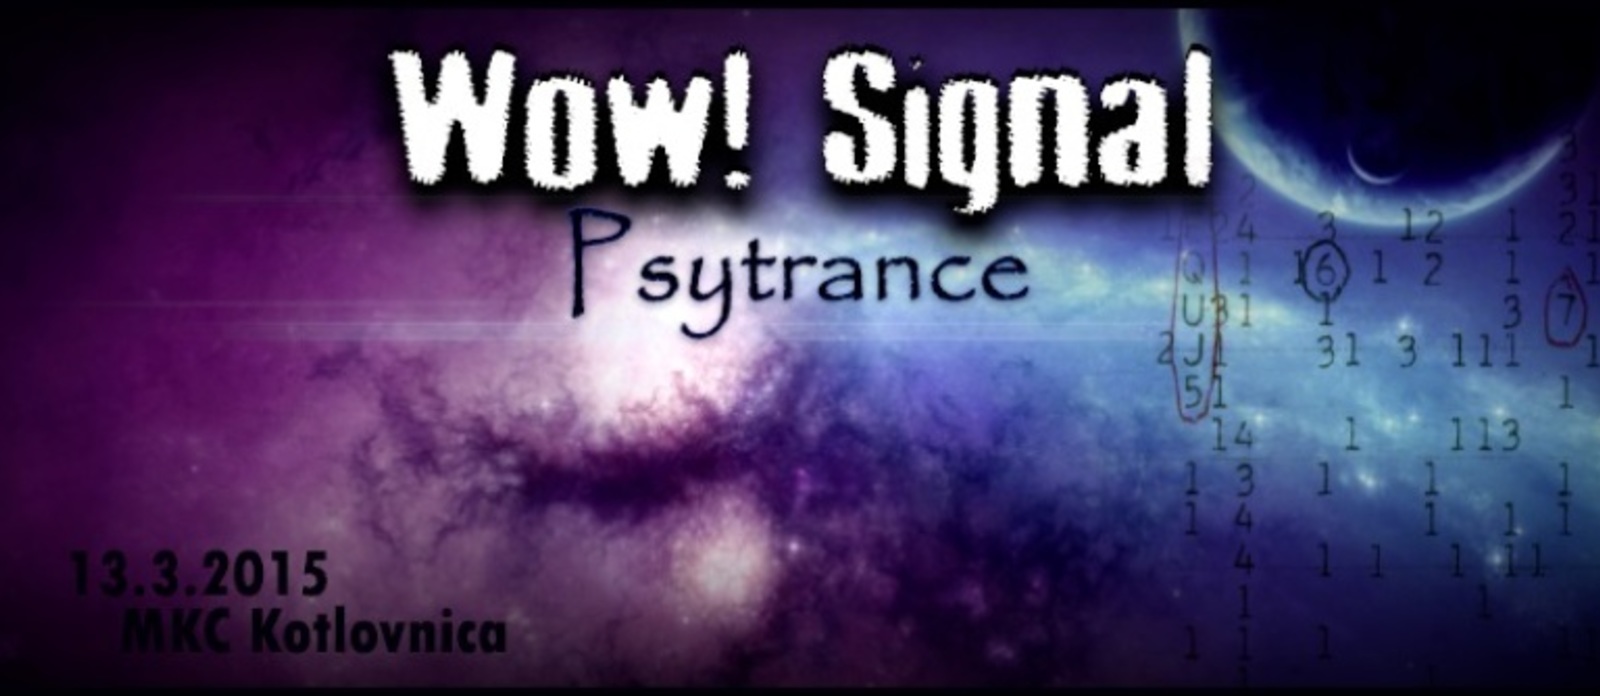 Wow! Signal: Psytrance